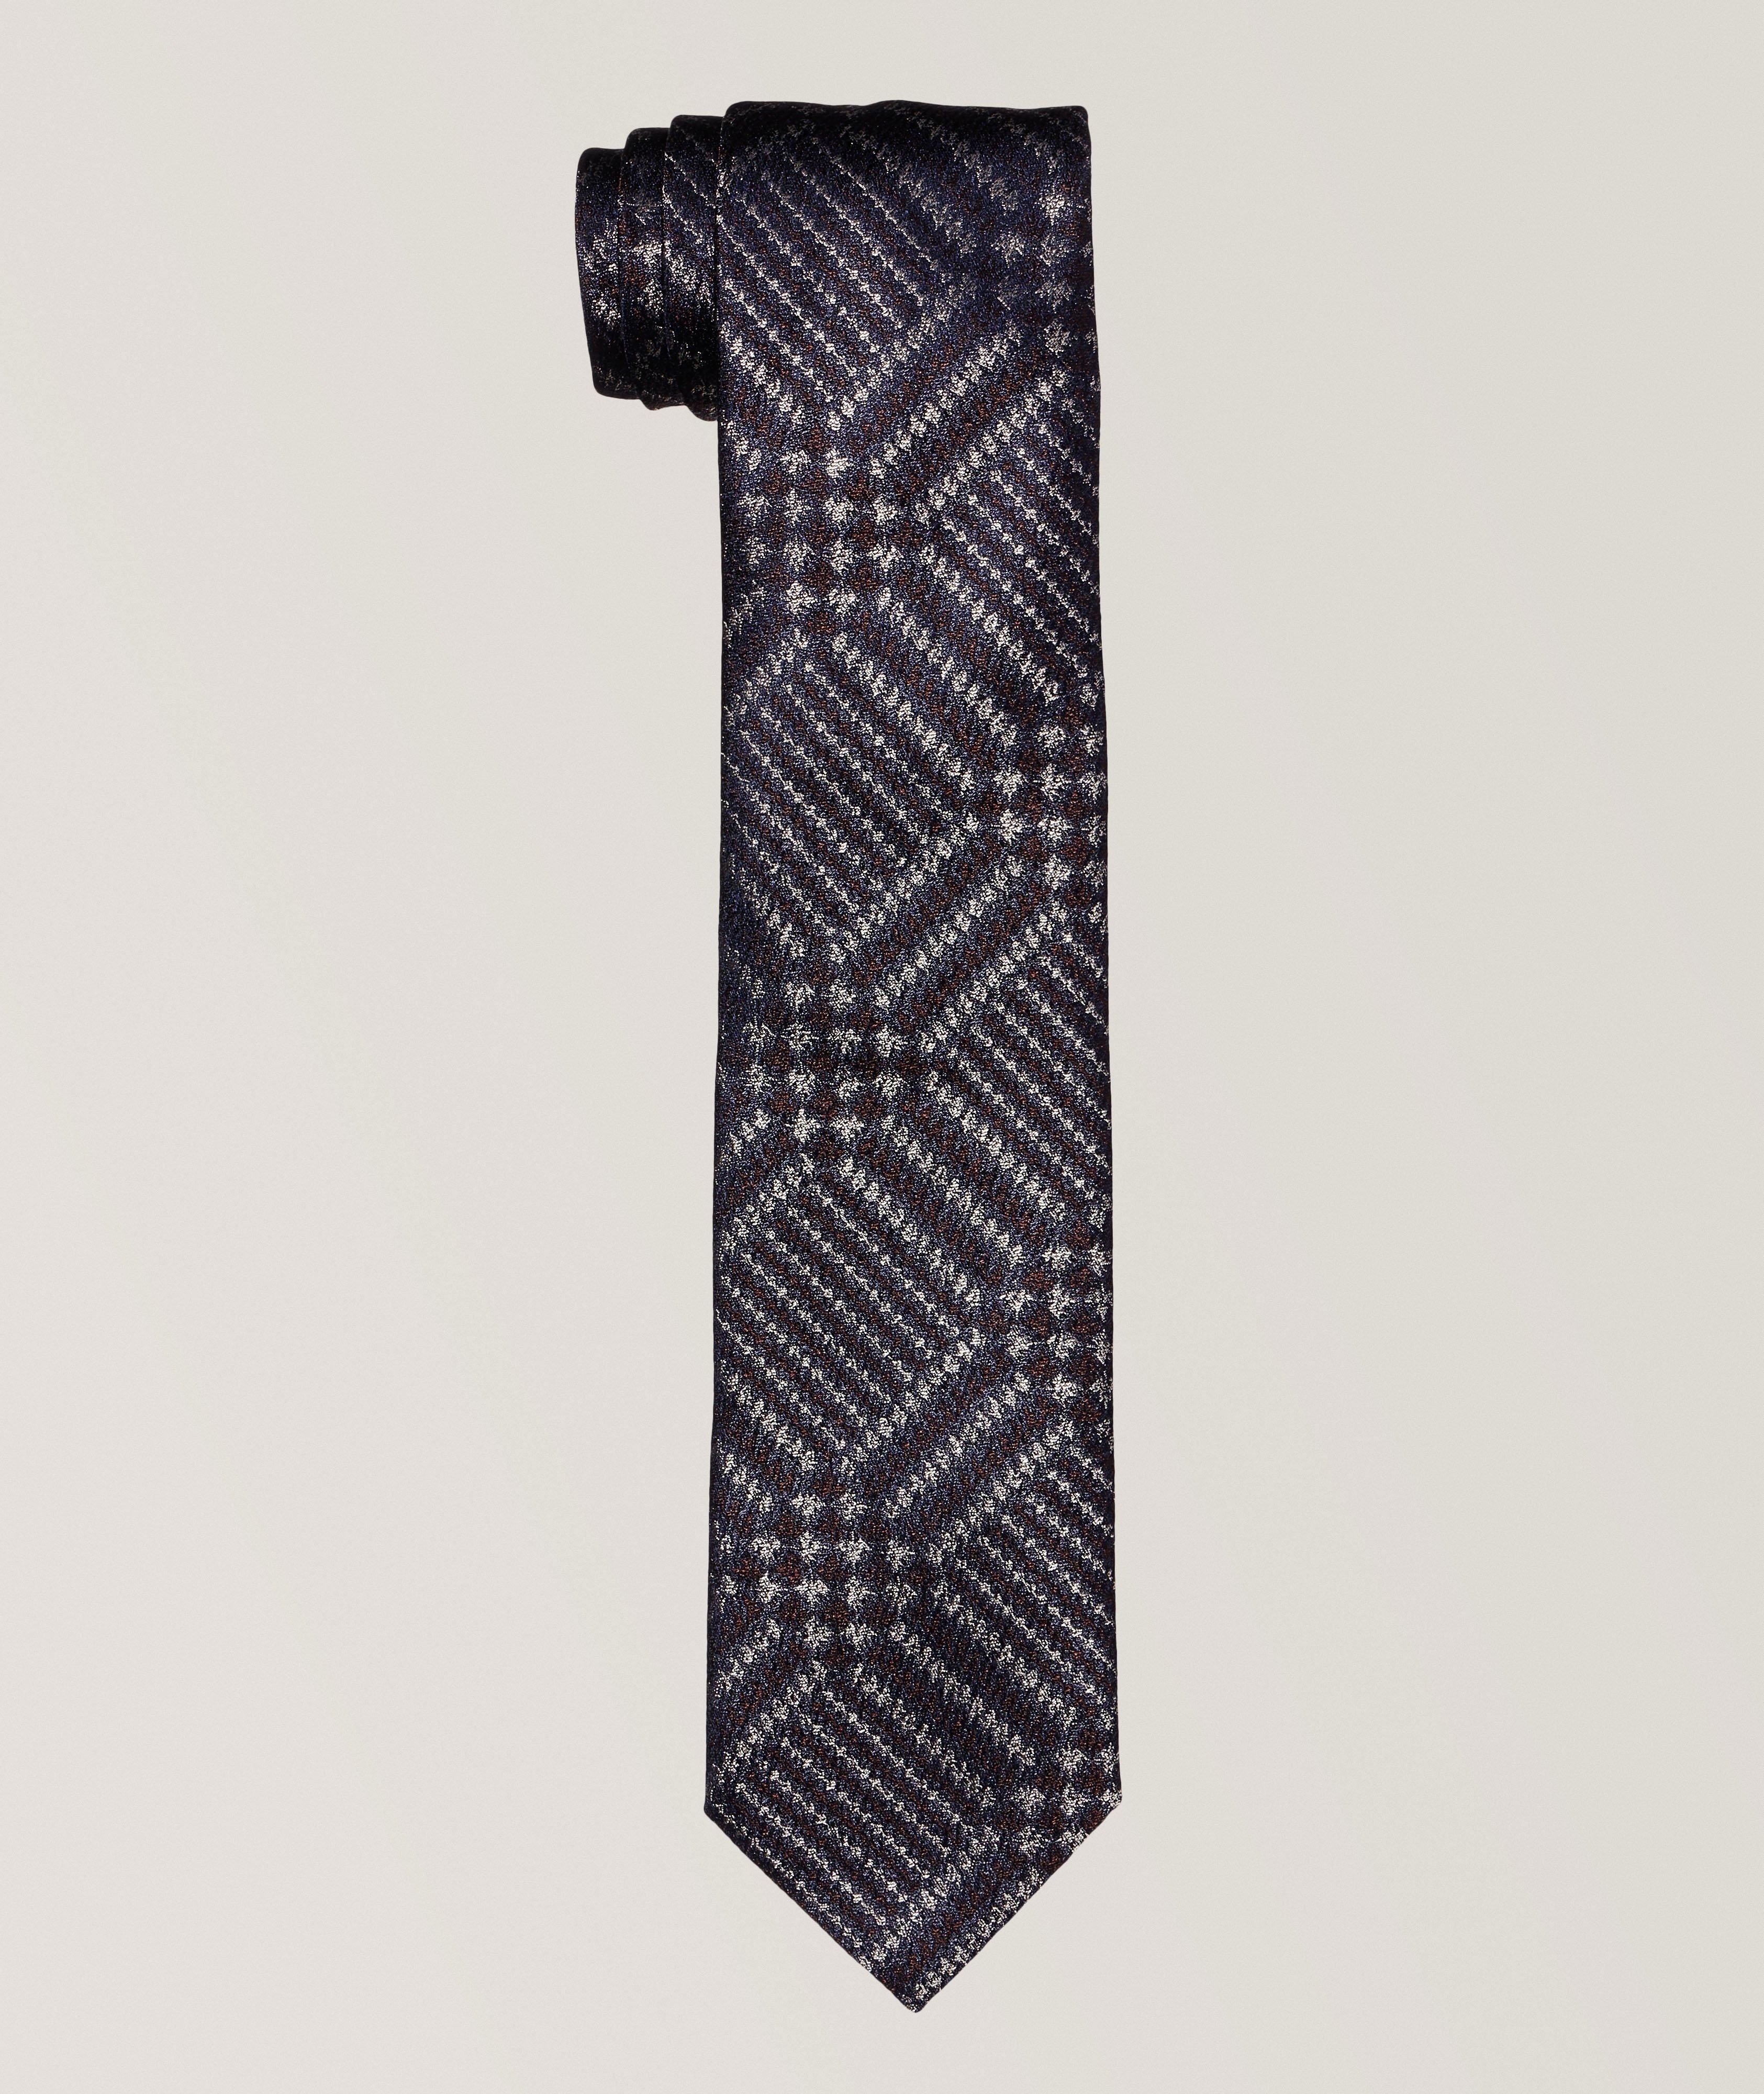 Cravate en soie à motif de feuilles image 0